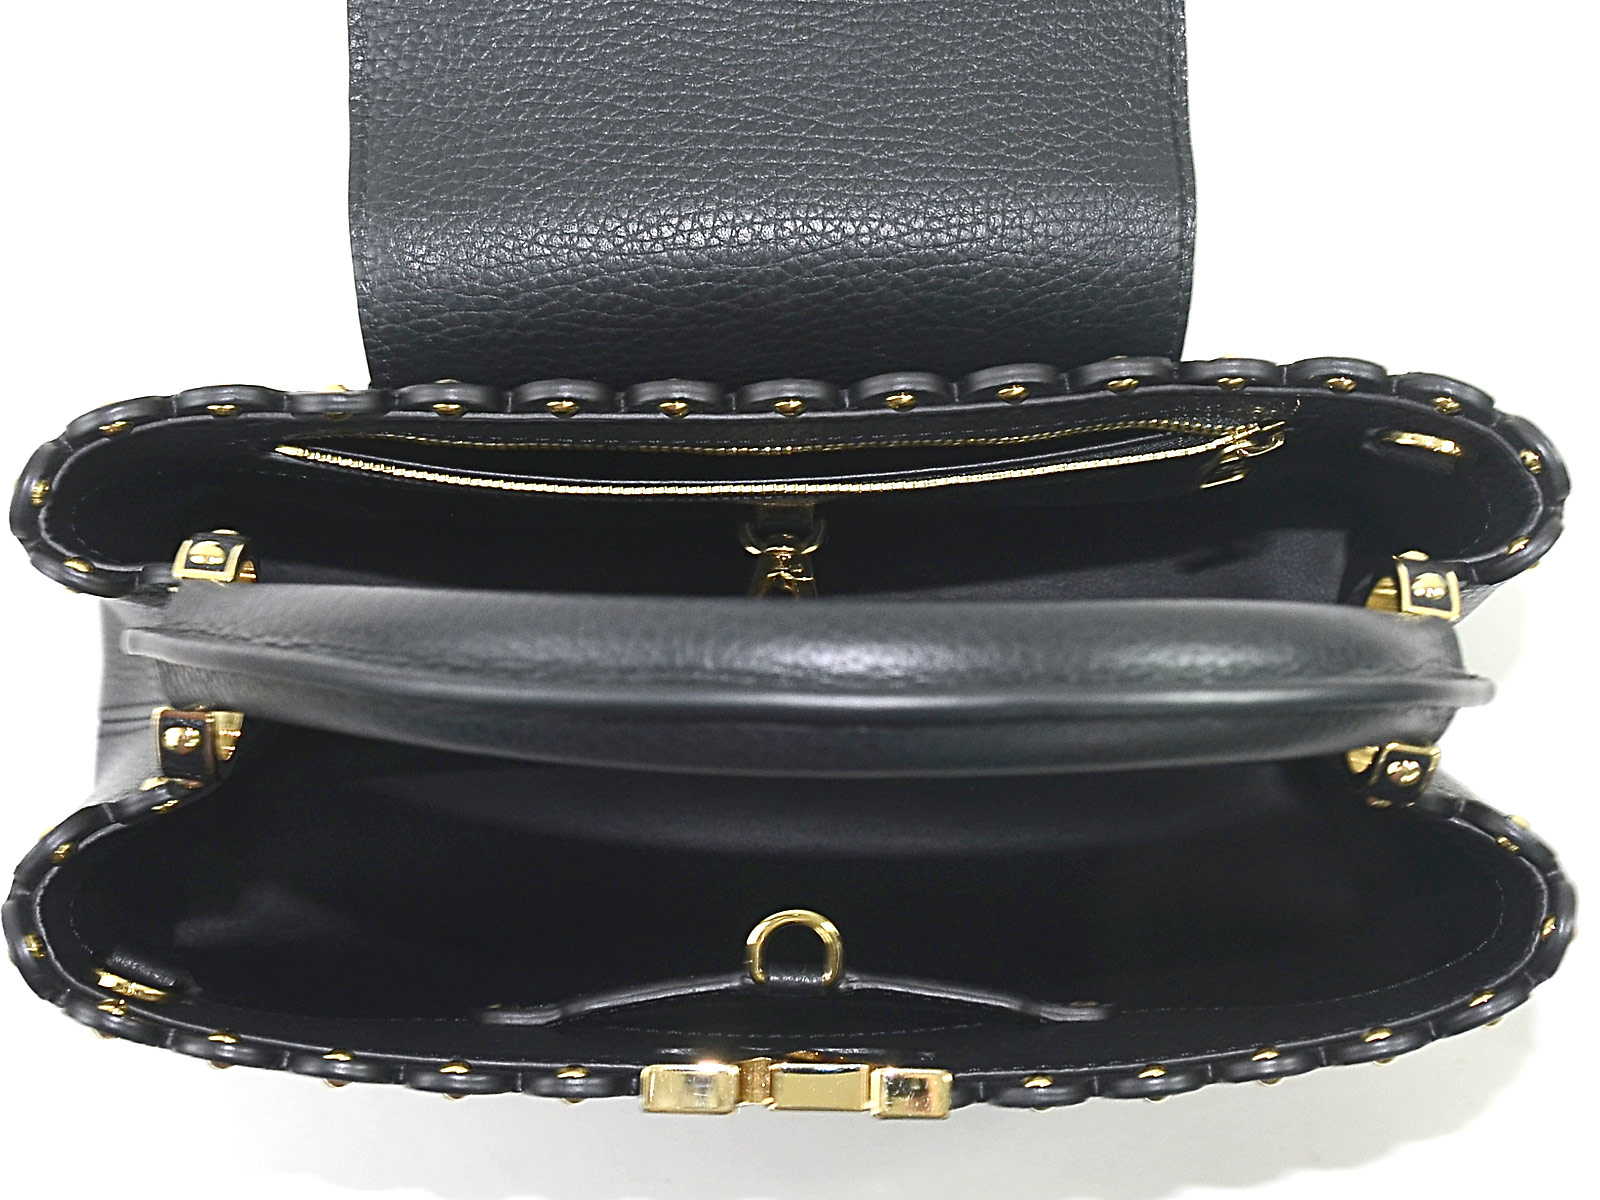 Louis Vuitton Capucines PM Handbag Shoulder Bag Black Taurillon Leather - 96090 | eBay